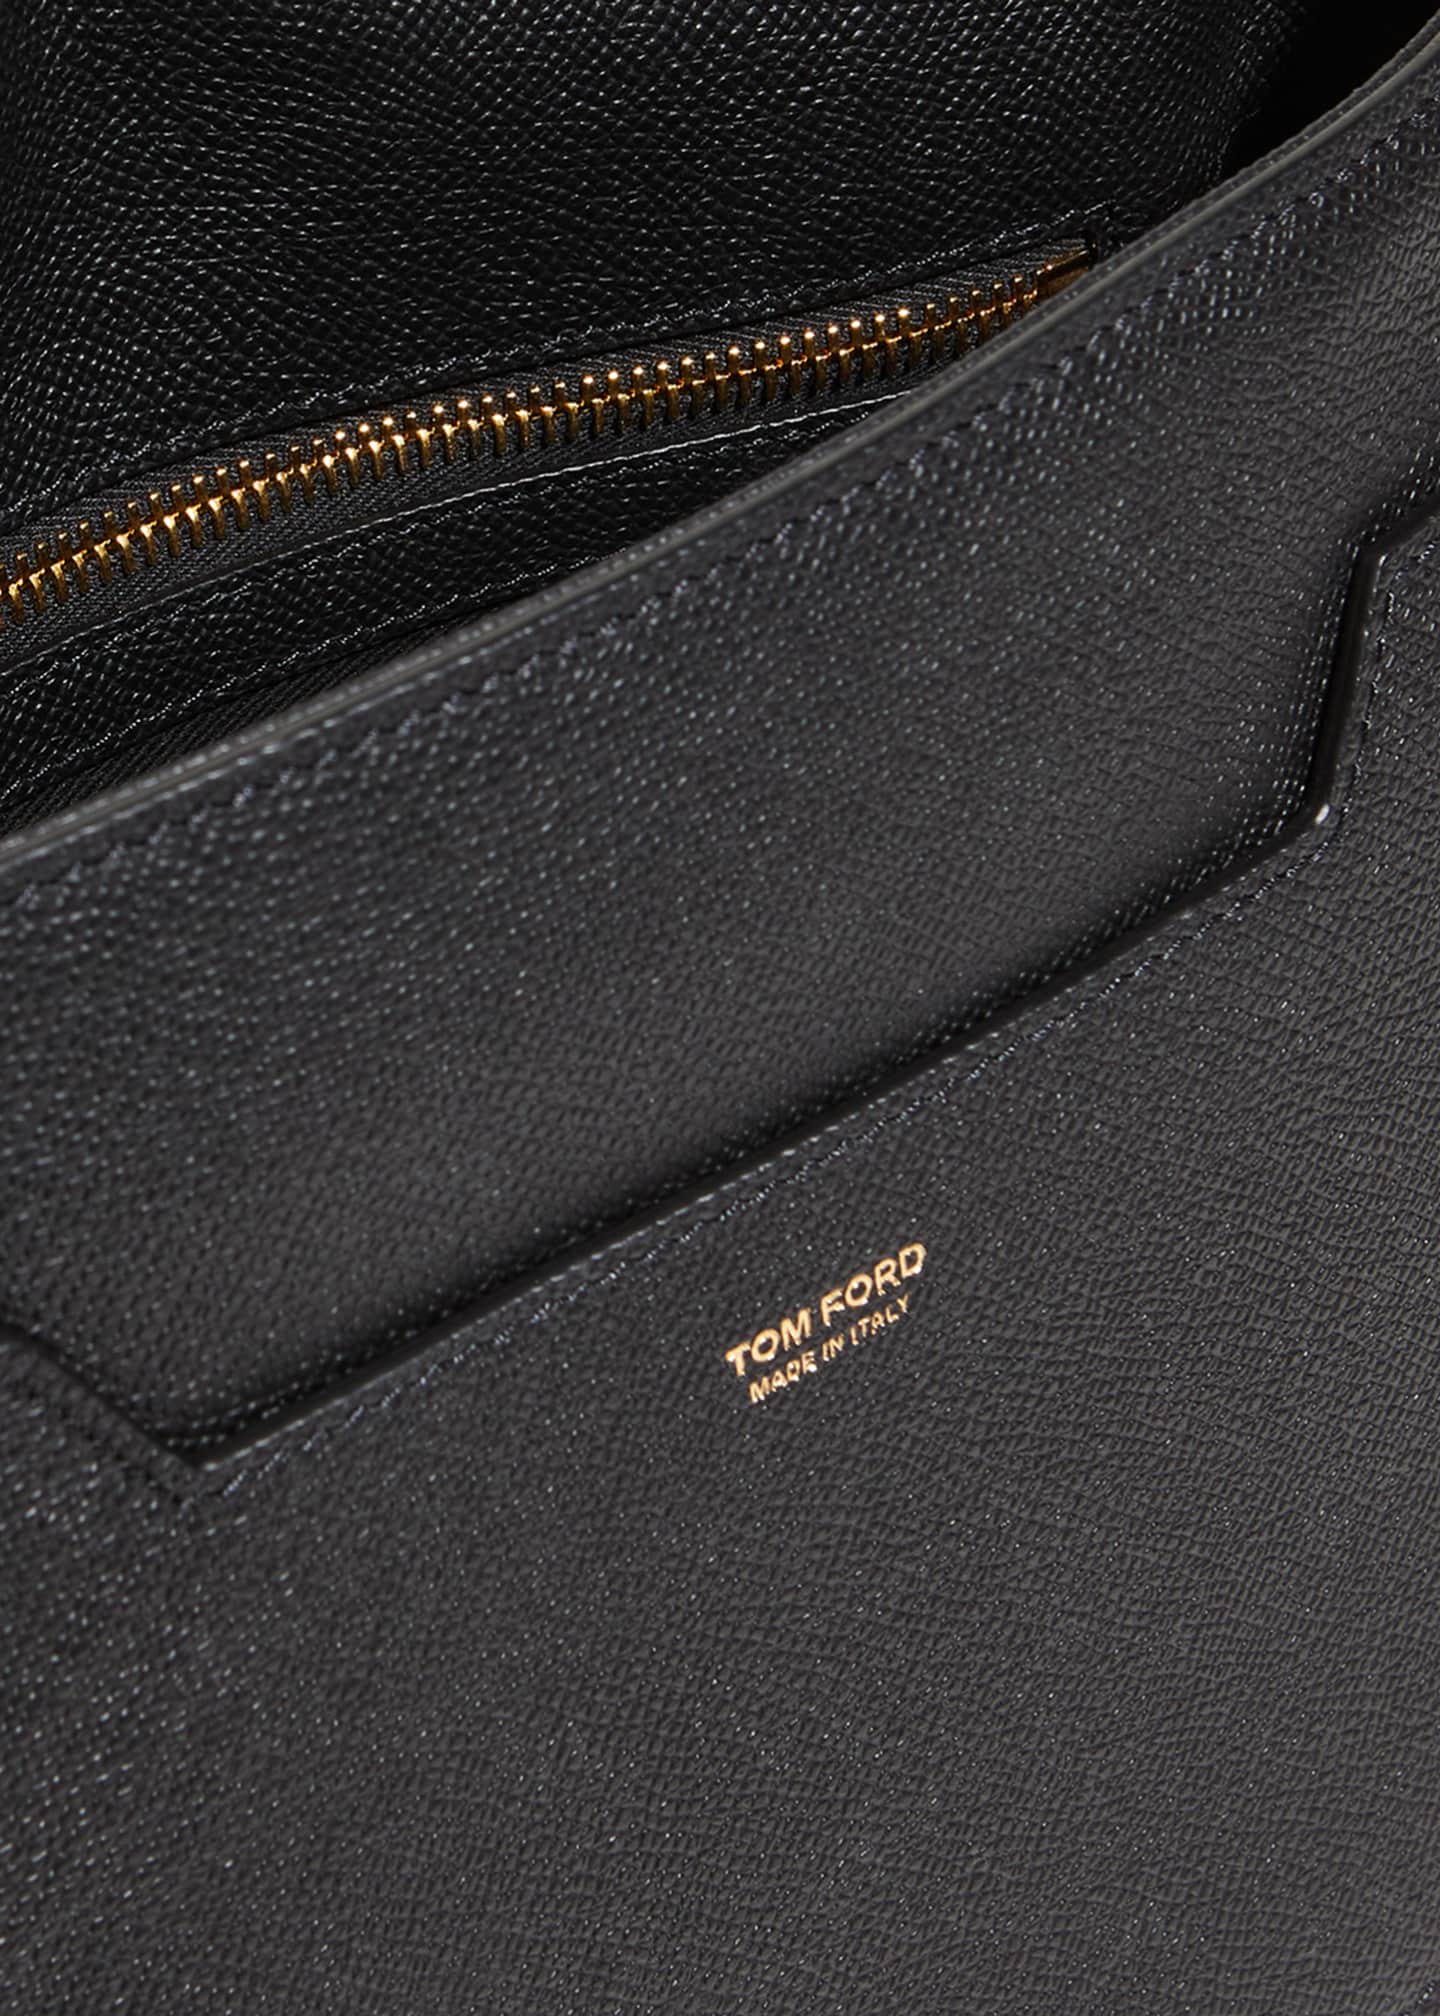 Tom Ford Jennifer Medium Grained Leather Shoulder Bag